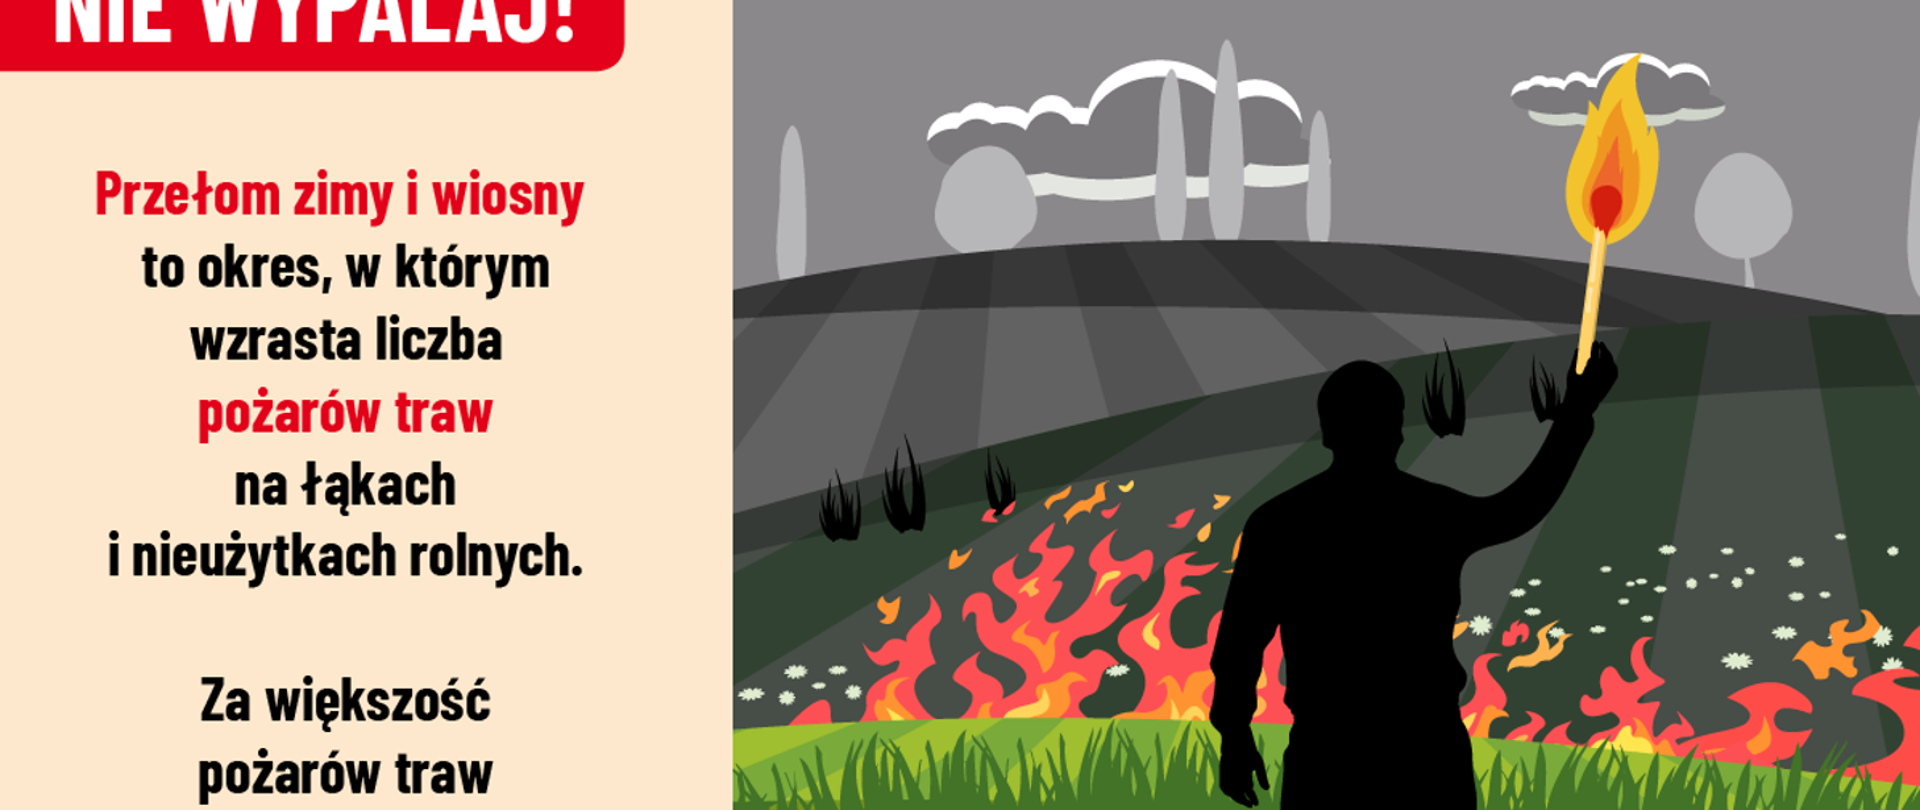 Grafika do kampanii "Stop pożarom traw" przedstawiająca napis Nie Wypalaj! oraz czarny zarys człowieka z zapałką i ogniem na tle palącej się trawy.